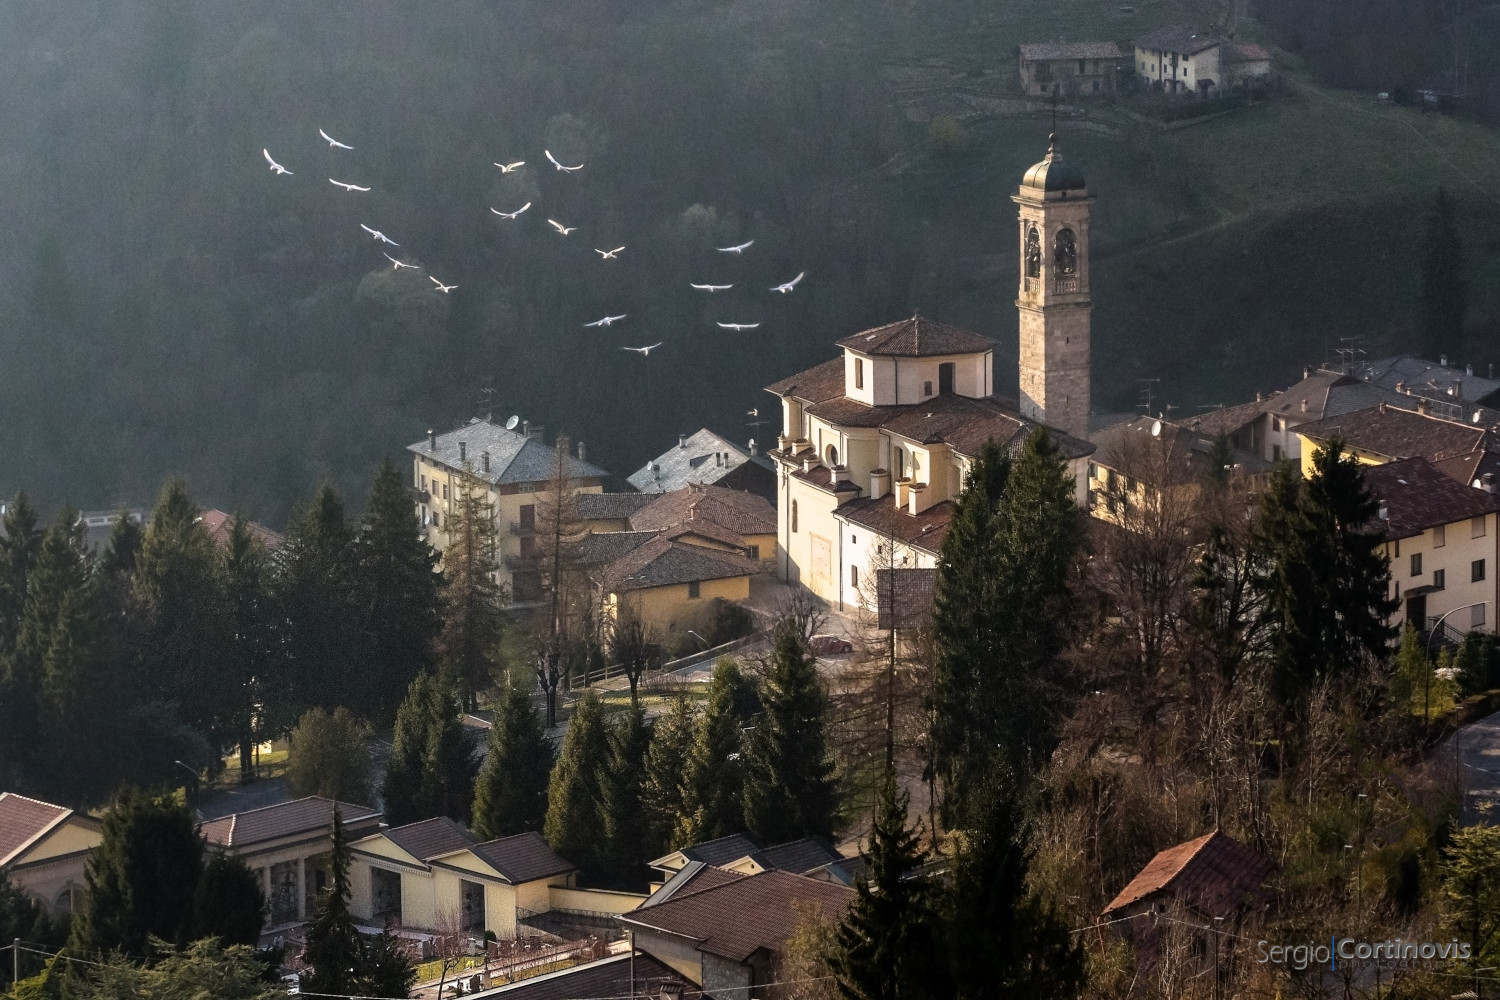 Un gruppo di colombe bianche vola vicino ad un campanile a Serina